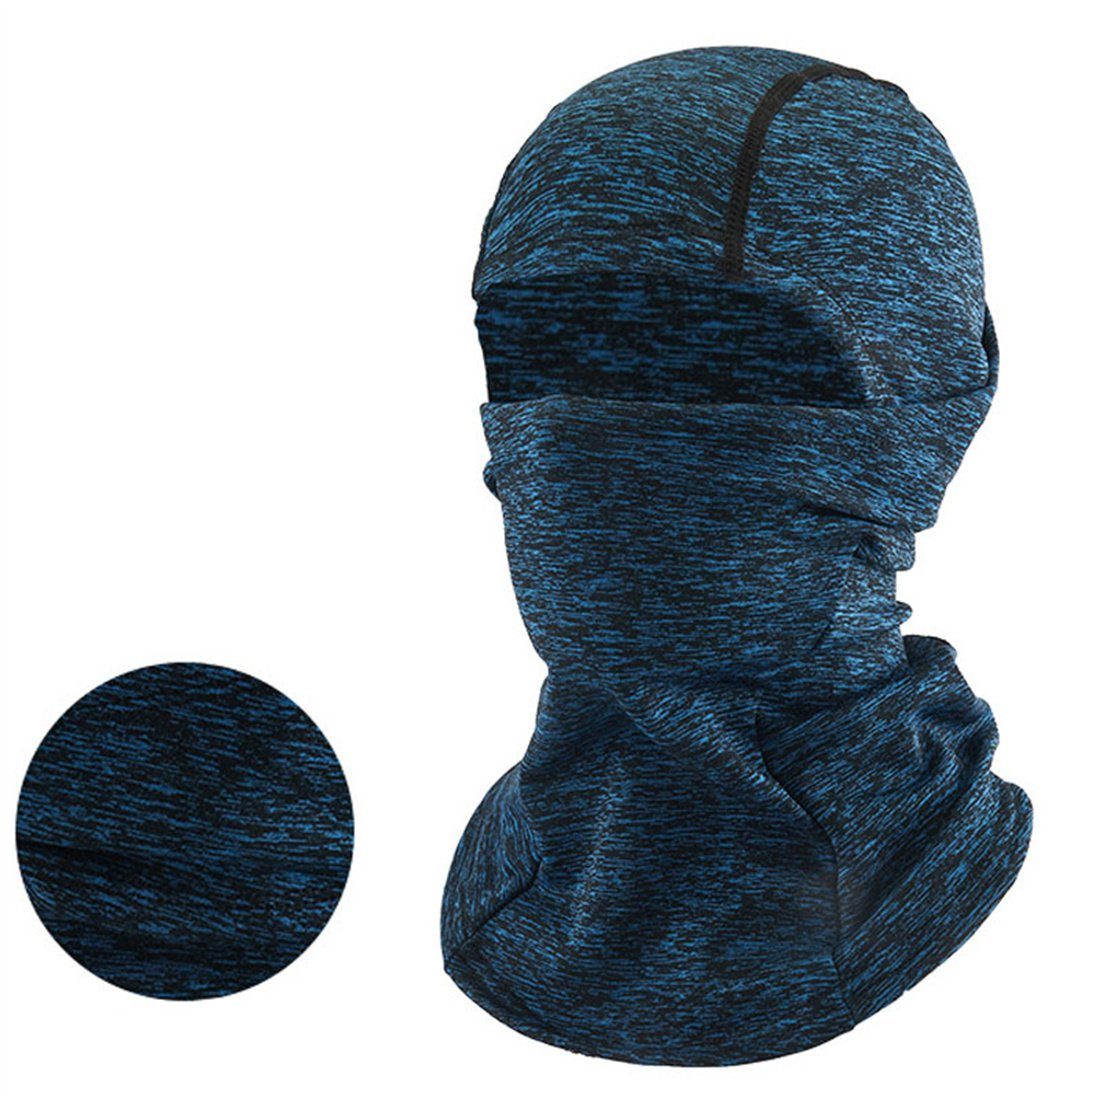 DÖRÖY Sturmhaube Winter unisex Maske, blau Kopfbedeckung, Ski warme kalte Radfahren